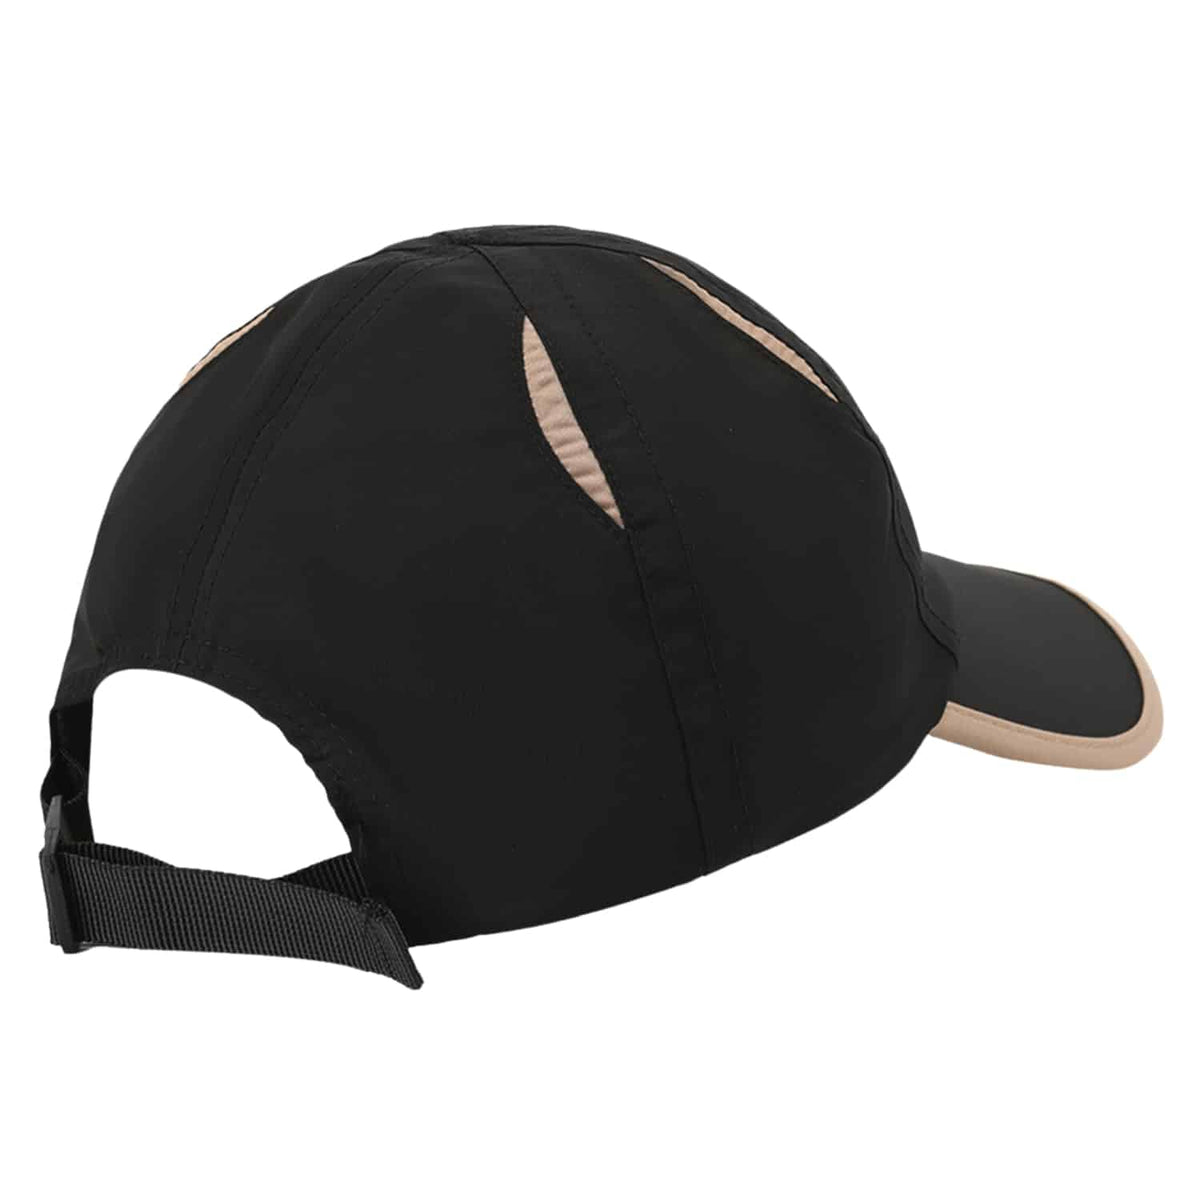 Helas Road Cap - Black - Strapback Cap by Helas One Size